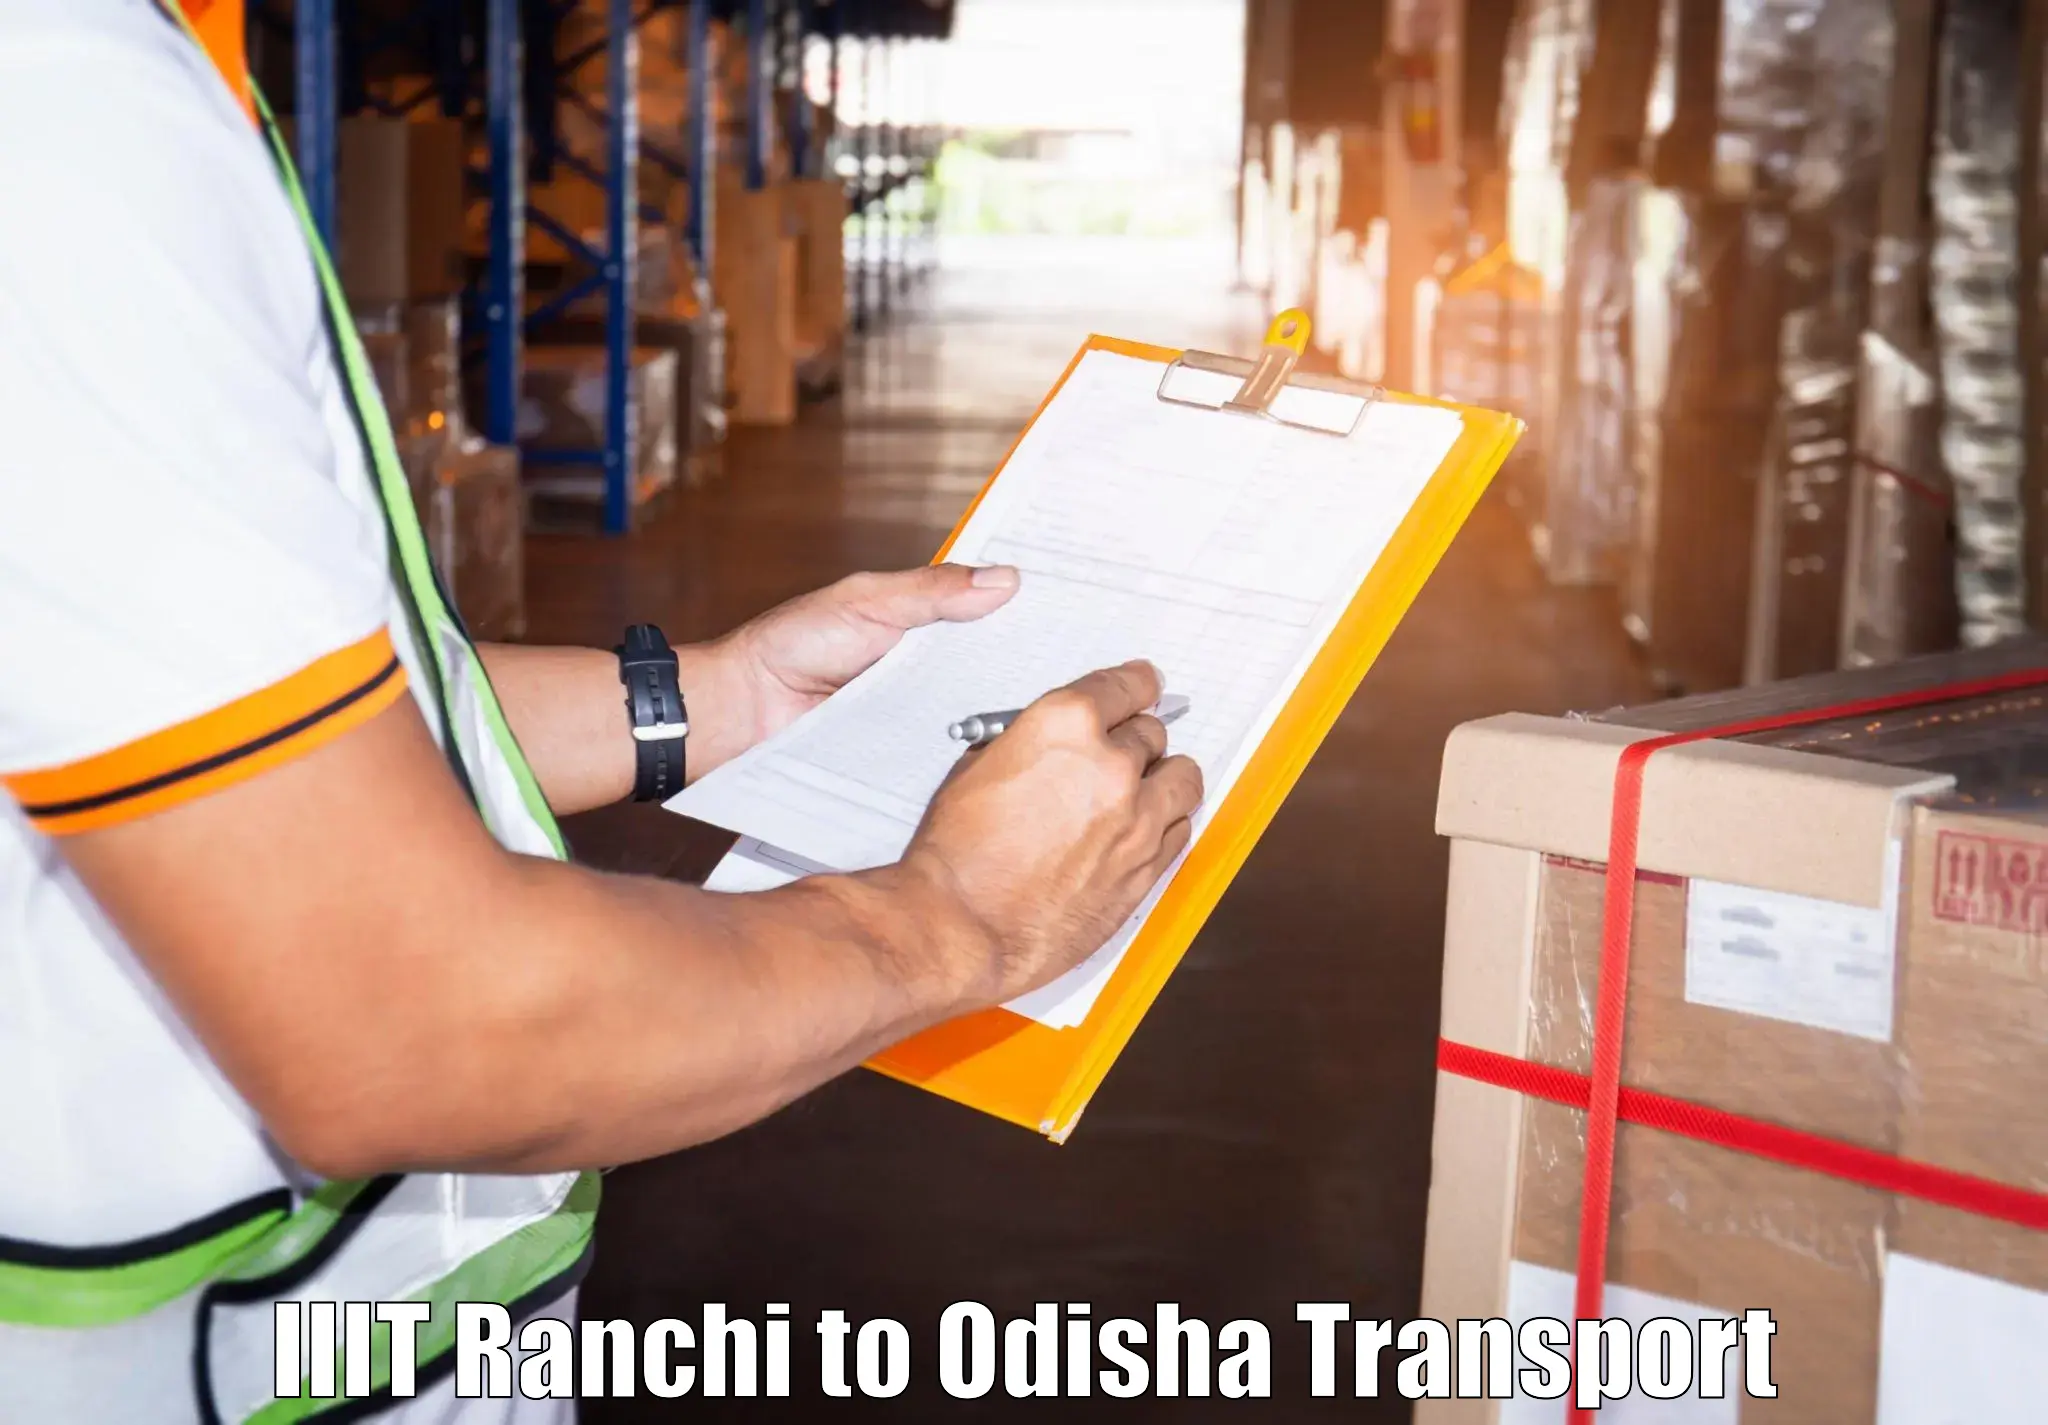 Transport in sharing IIIT Ranchi to Nirakarpur